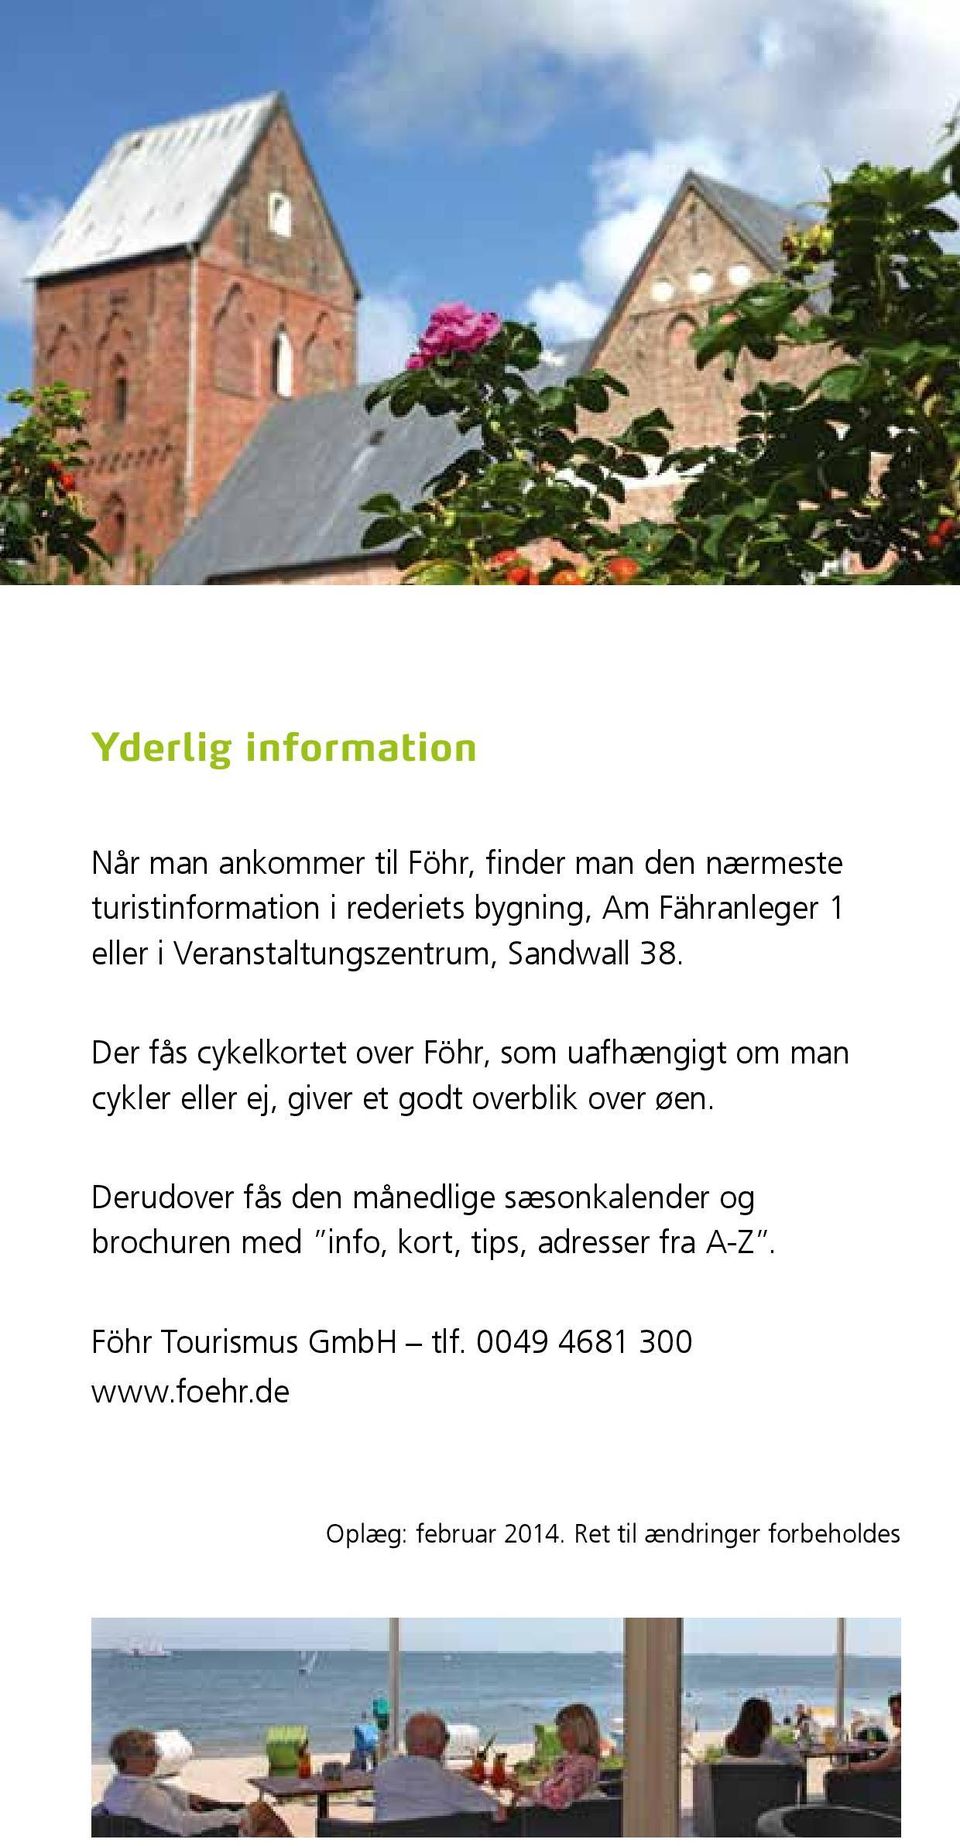 Der fås cykelkortet over Föhr, som uafhængigt om man cykler eller ej, giver et godt overblik over øen.